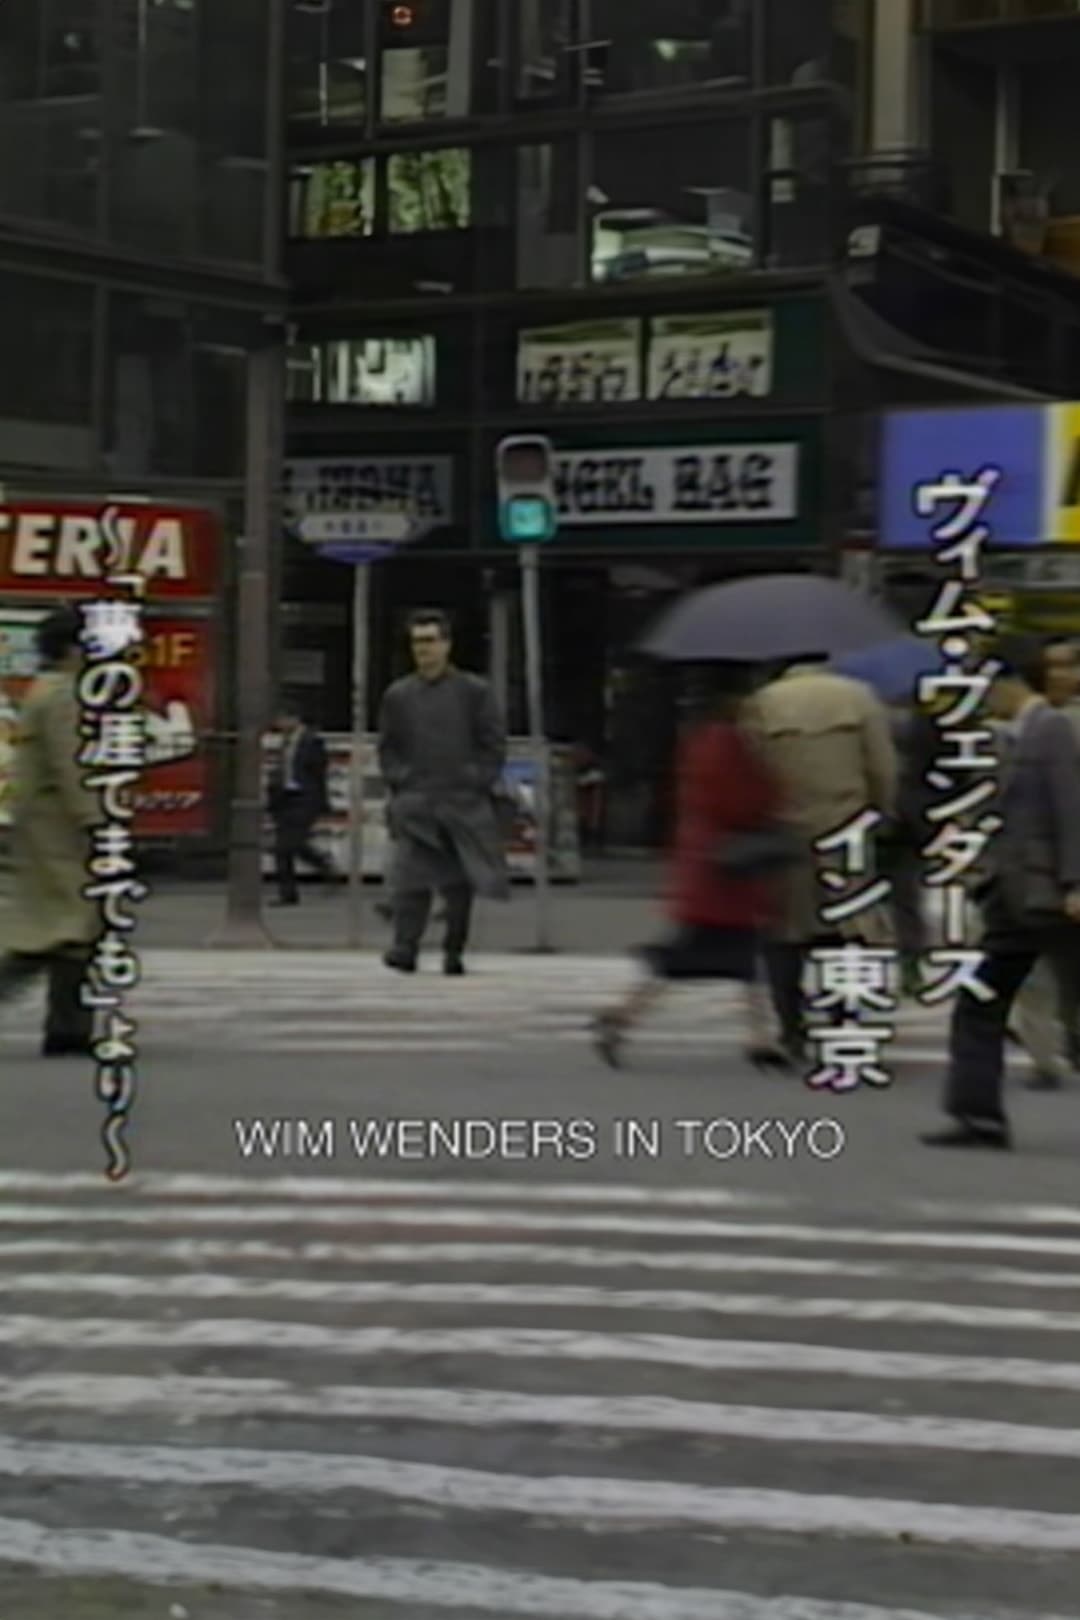 Wim Wenders in Tokyo